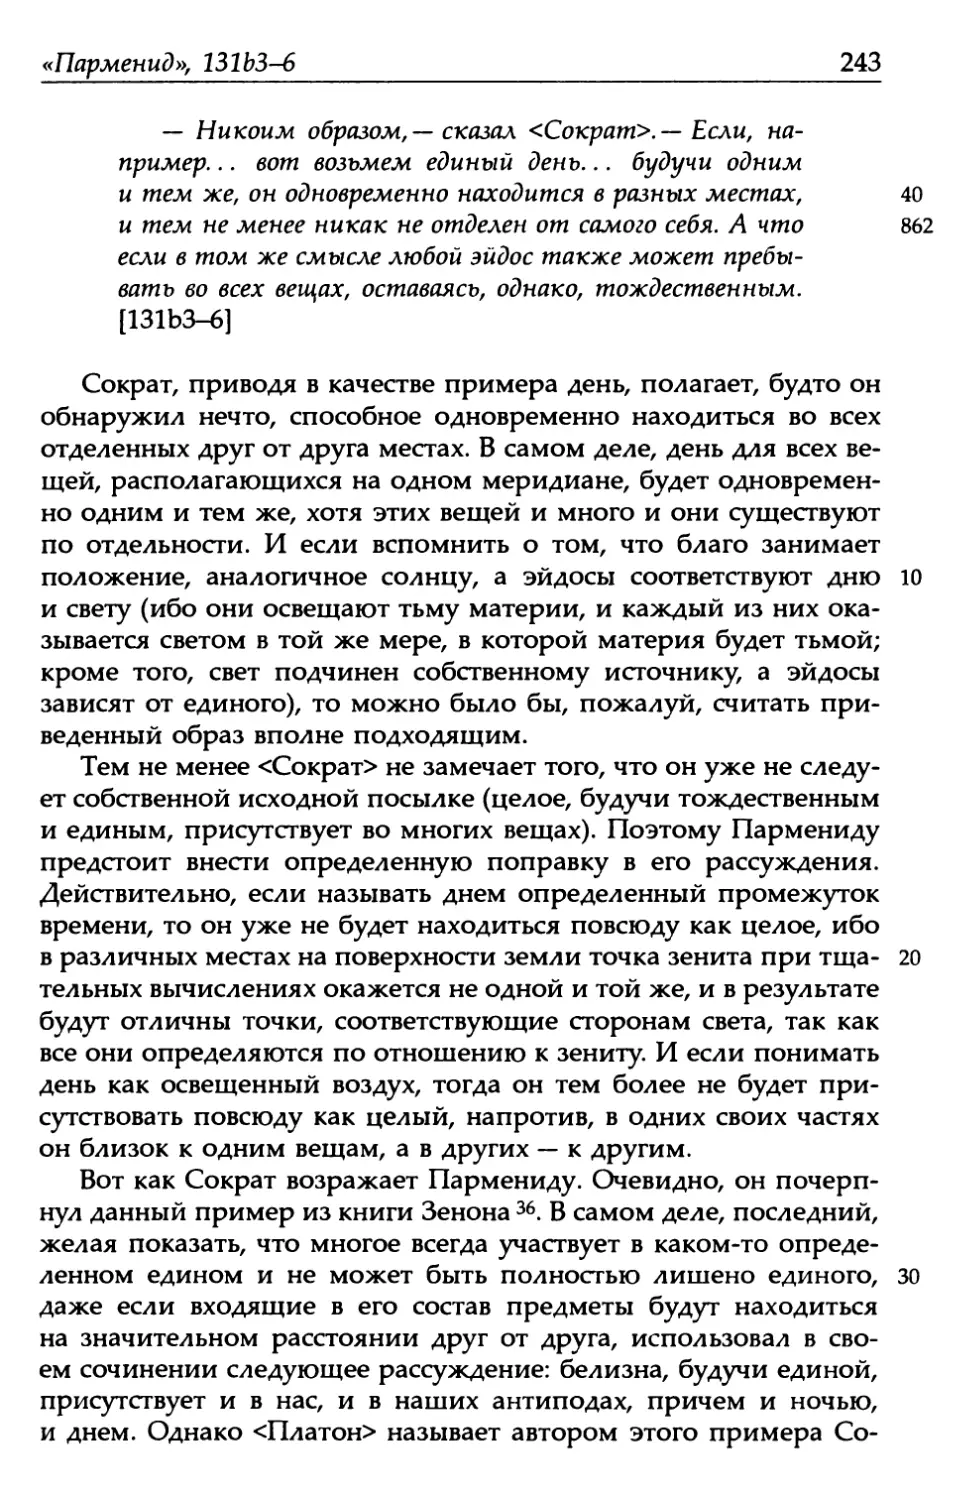 «Парменид», 131b3-6